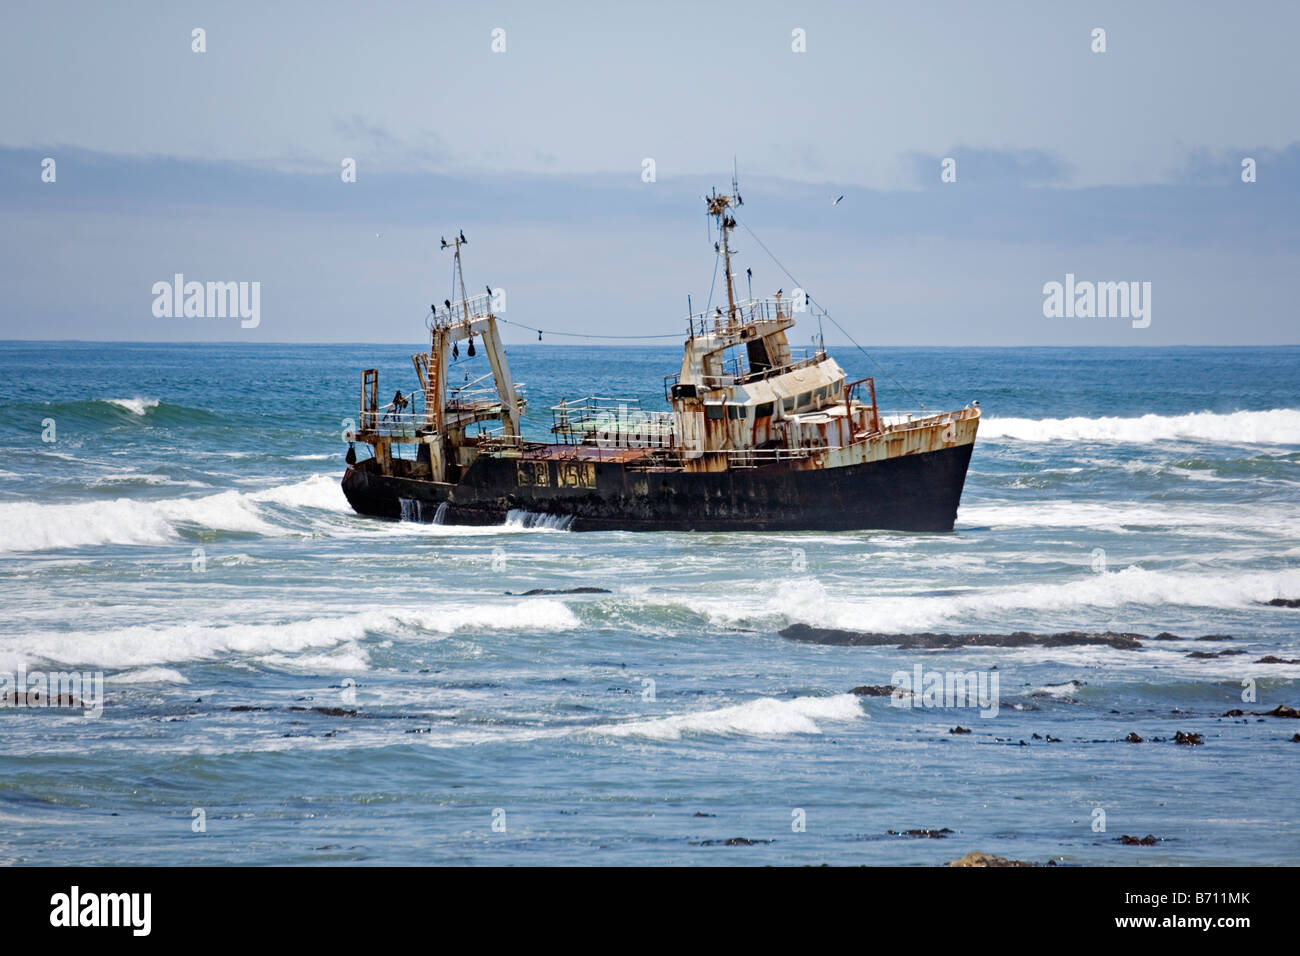 Coque de navire de rouille le long littoral de l'océan Atlantique à l'ouest de la Namibie Walvis Bay Banque D'Images